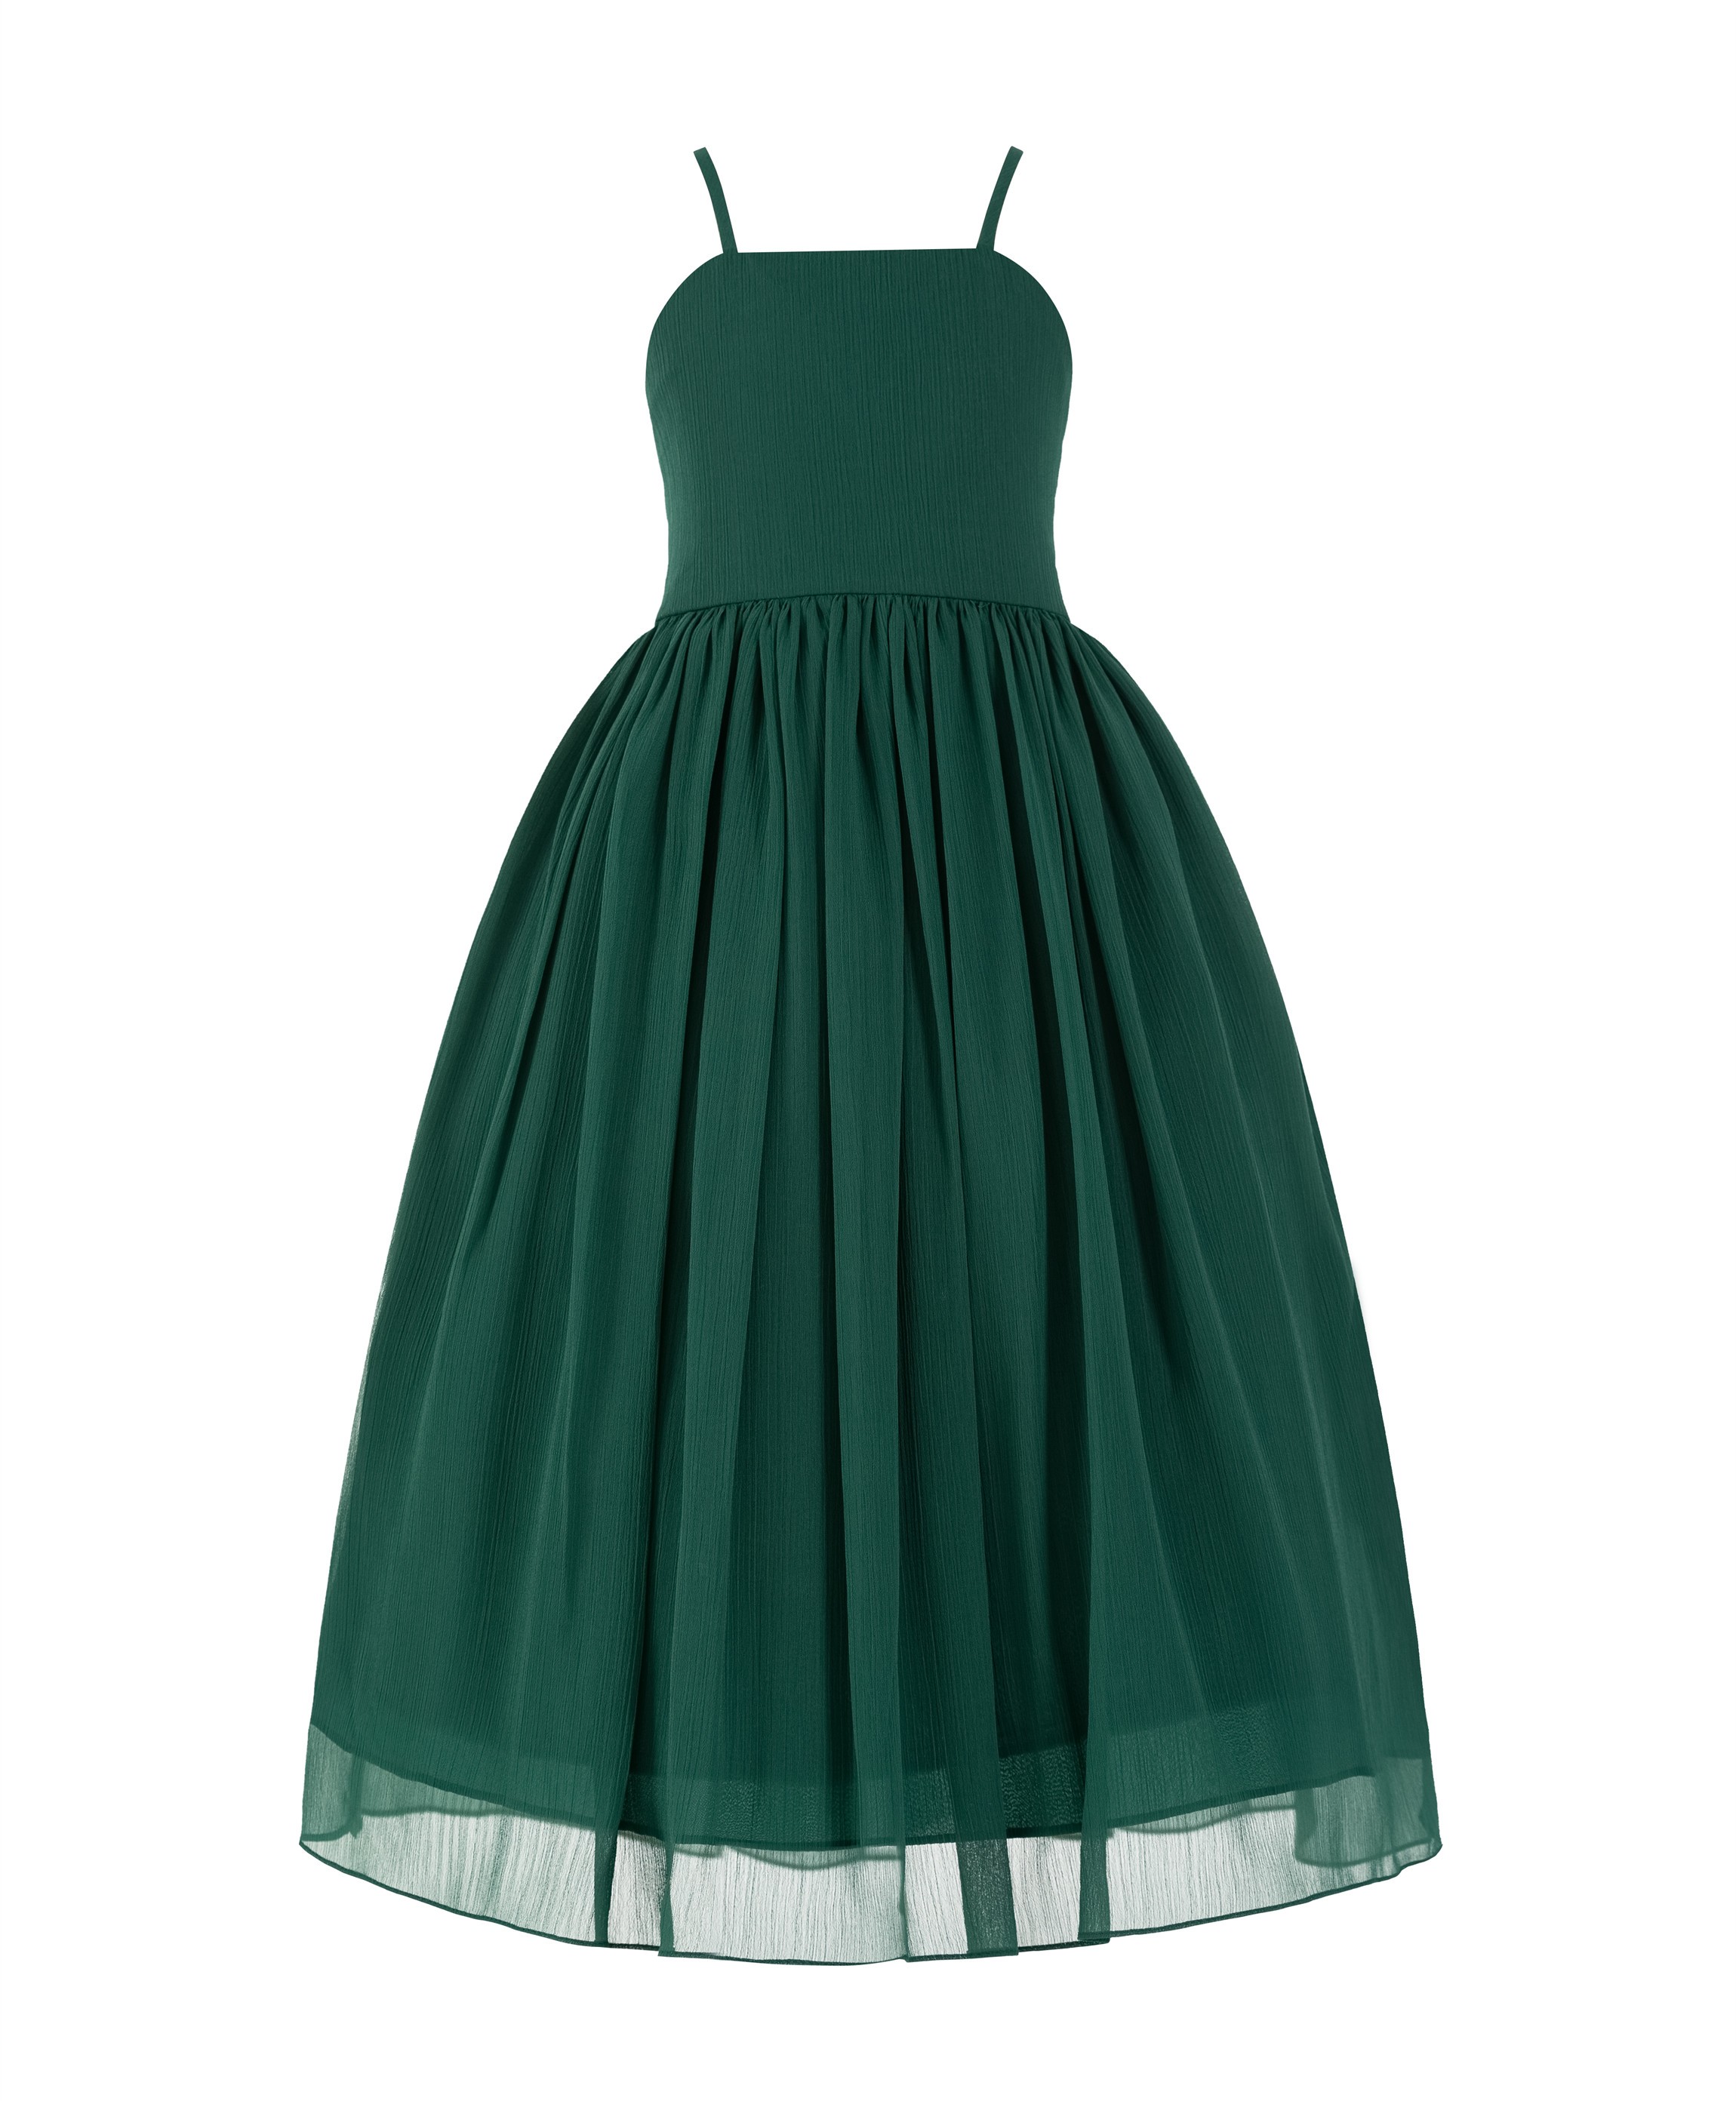 Forest Green Criss Cross Chiffon Flower Girl Dress Summer Dresses 191